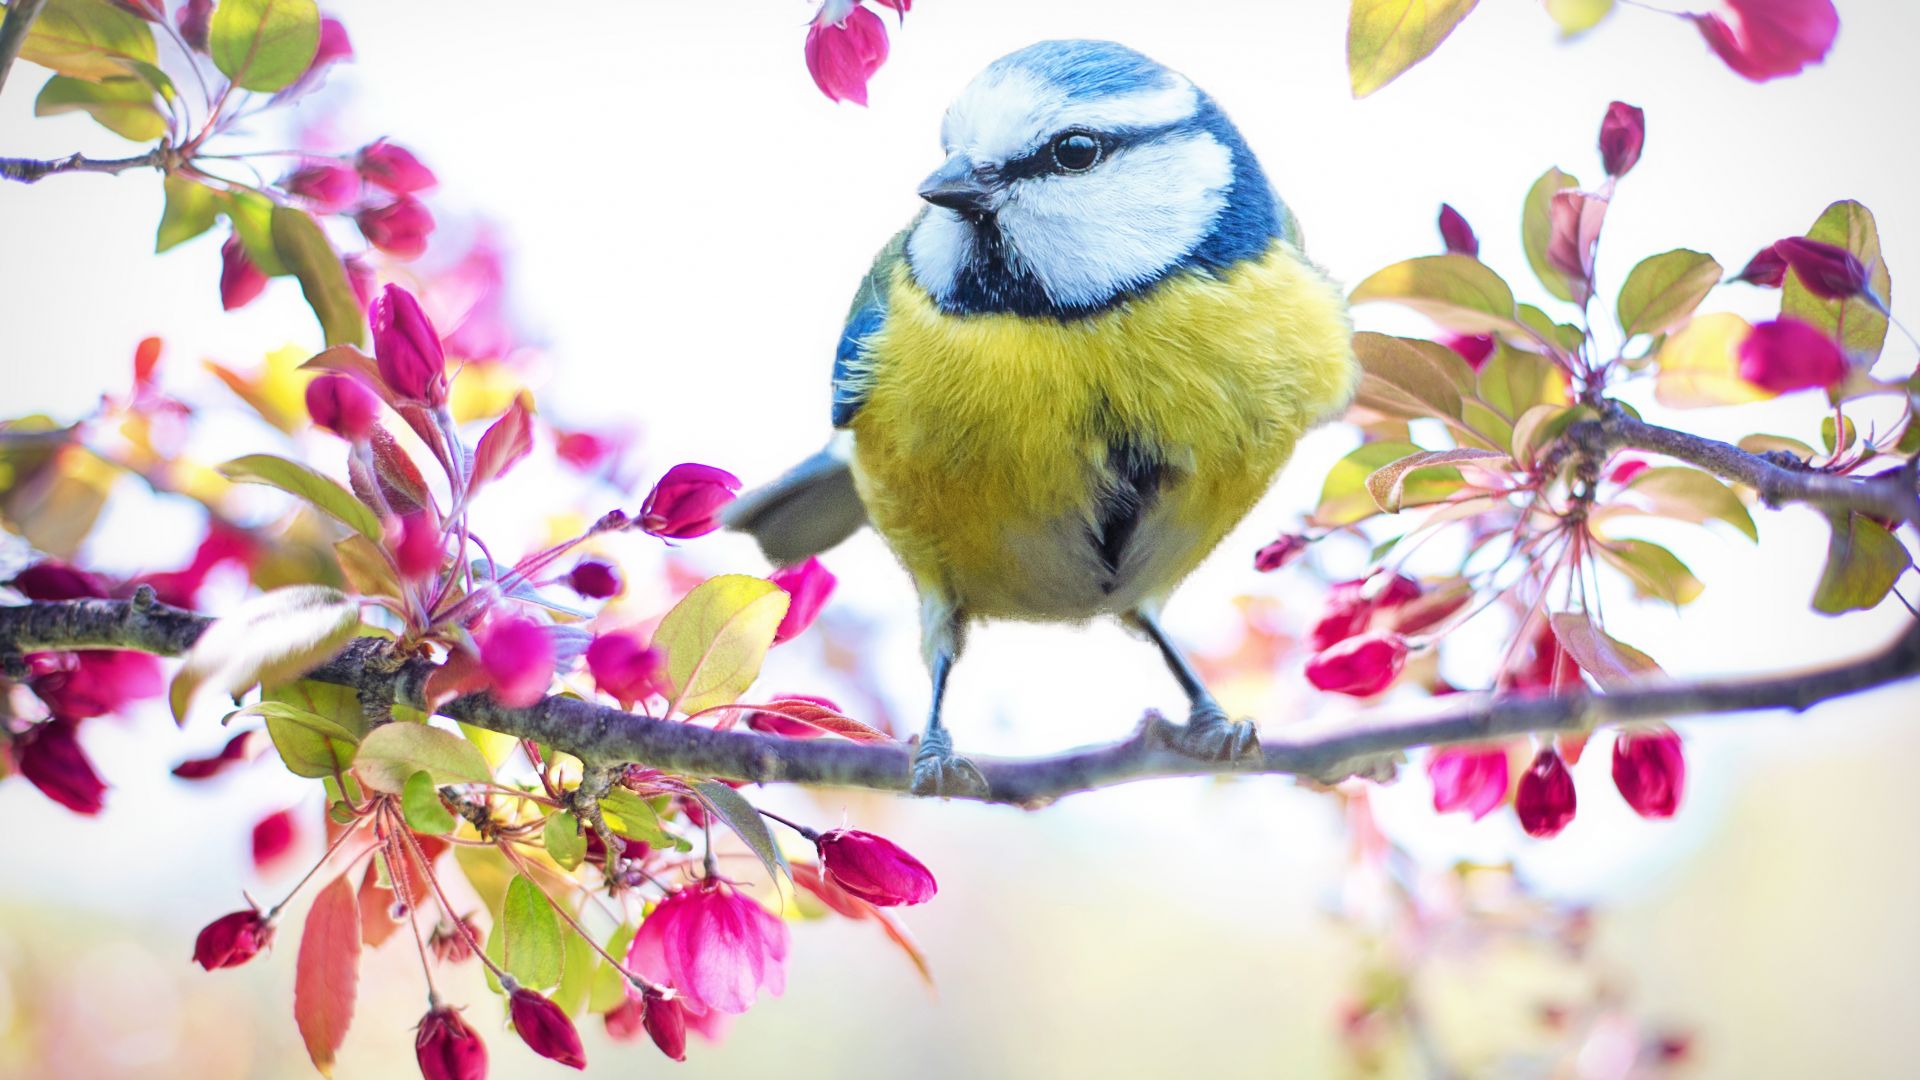 Khi nhìn thấy chim đẹp, bạn sẽ ngạc nhiên bởi sự tinh tế và tuyệt vời trong thiên nhiên. Họ có lông như một bức tranh hoa thật tuyệt vời và đôi mắt sáng lấp lánh.